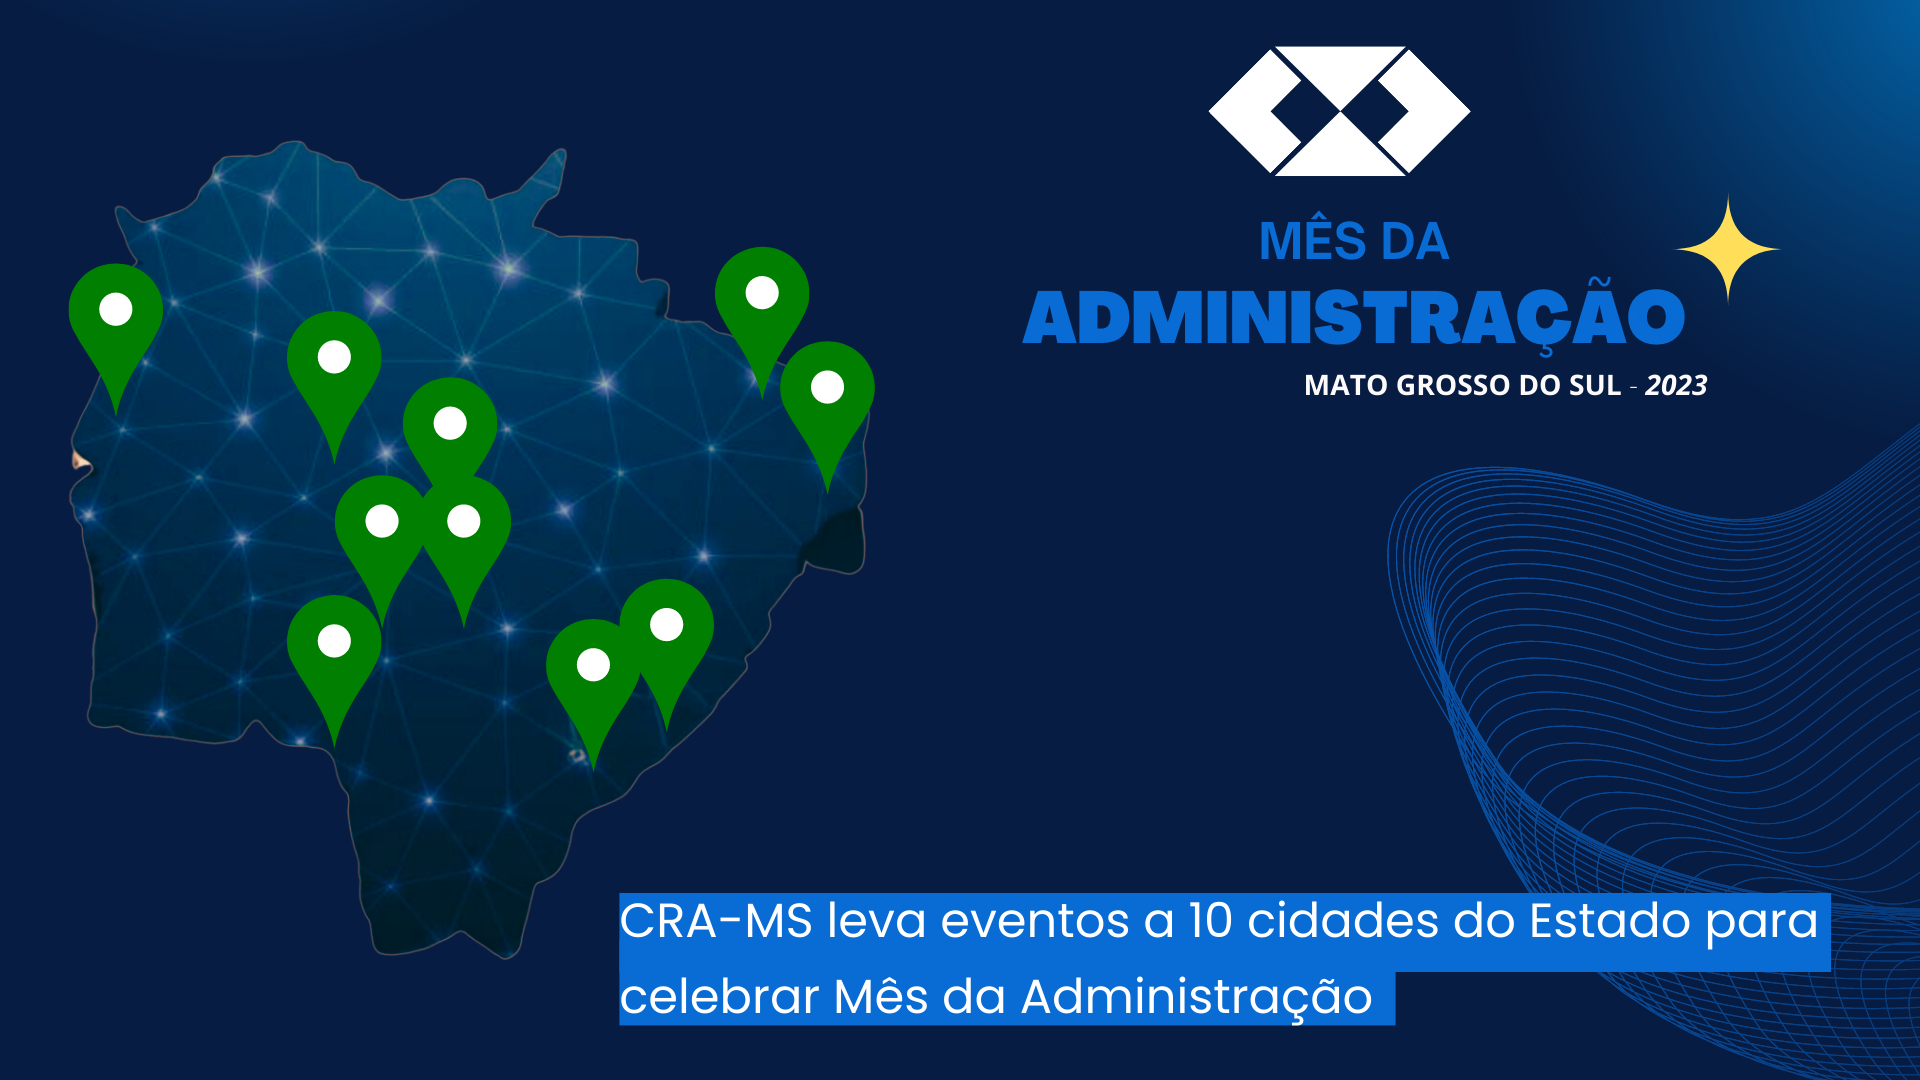 CRA-MS celebra o Mês da Administração com eventos em todo o Estado